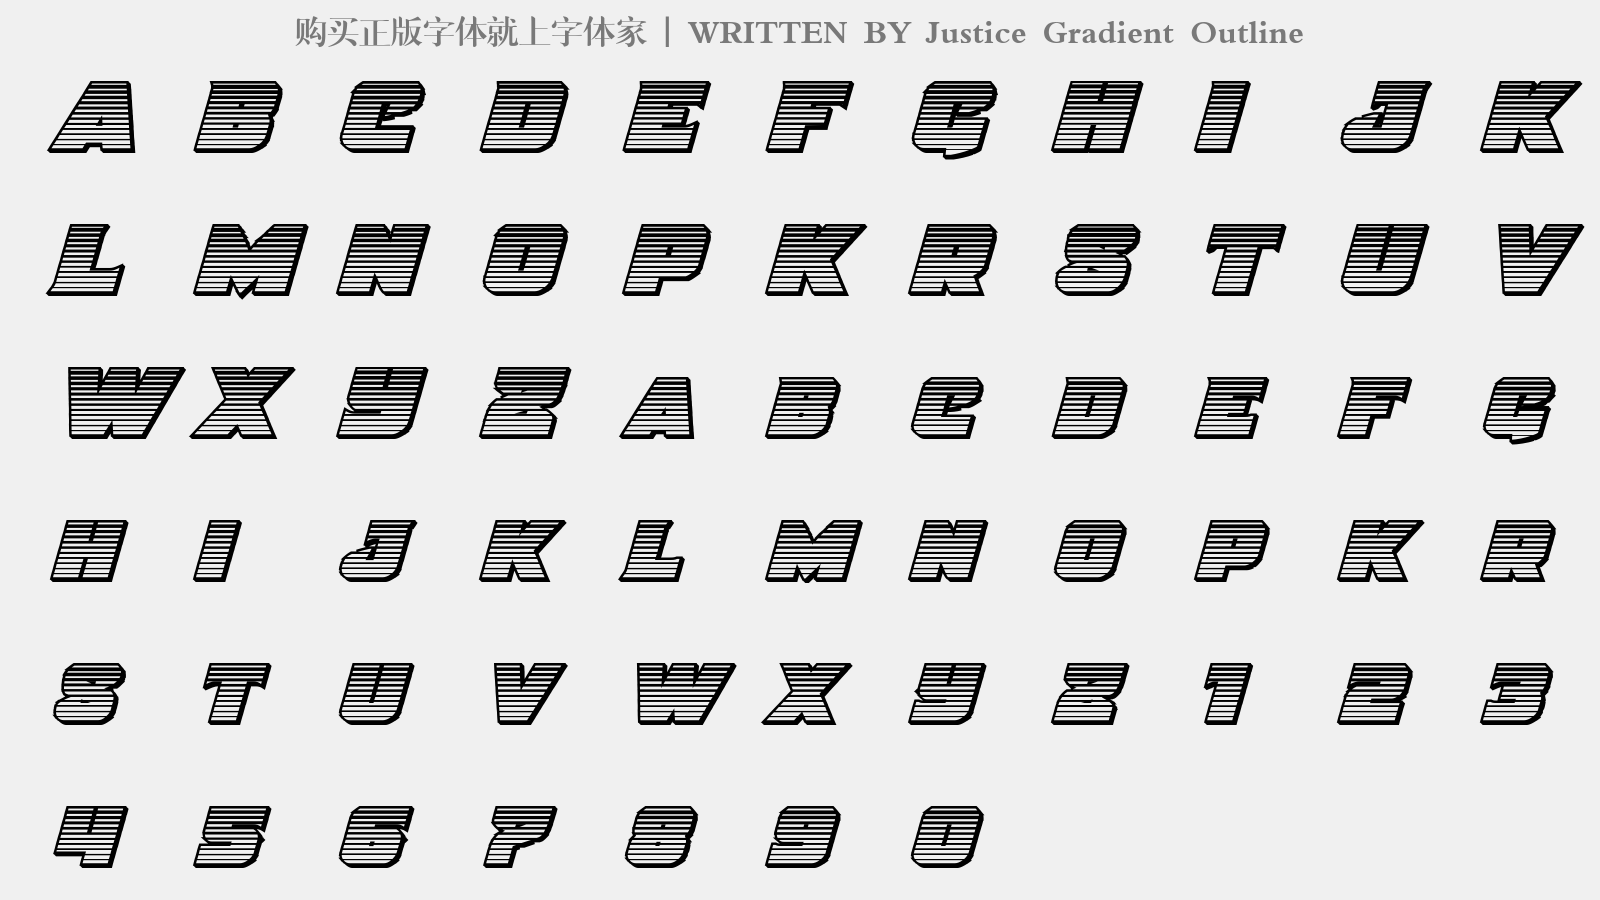 Justice Gradient Outline - 大写字母/小写字母/数字